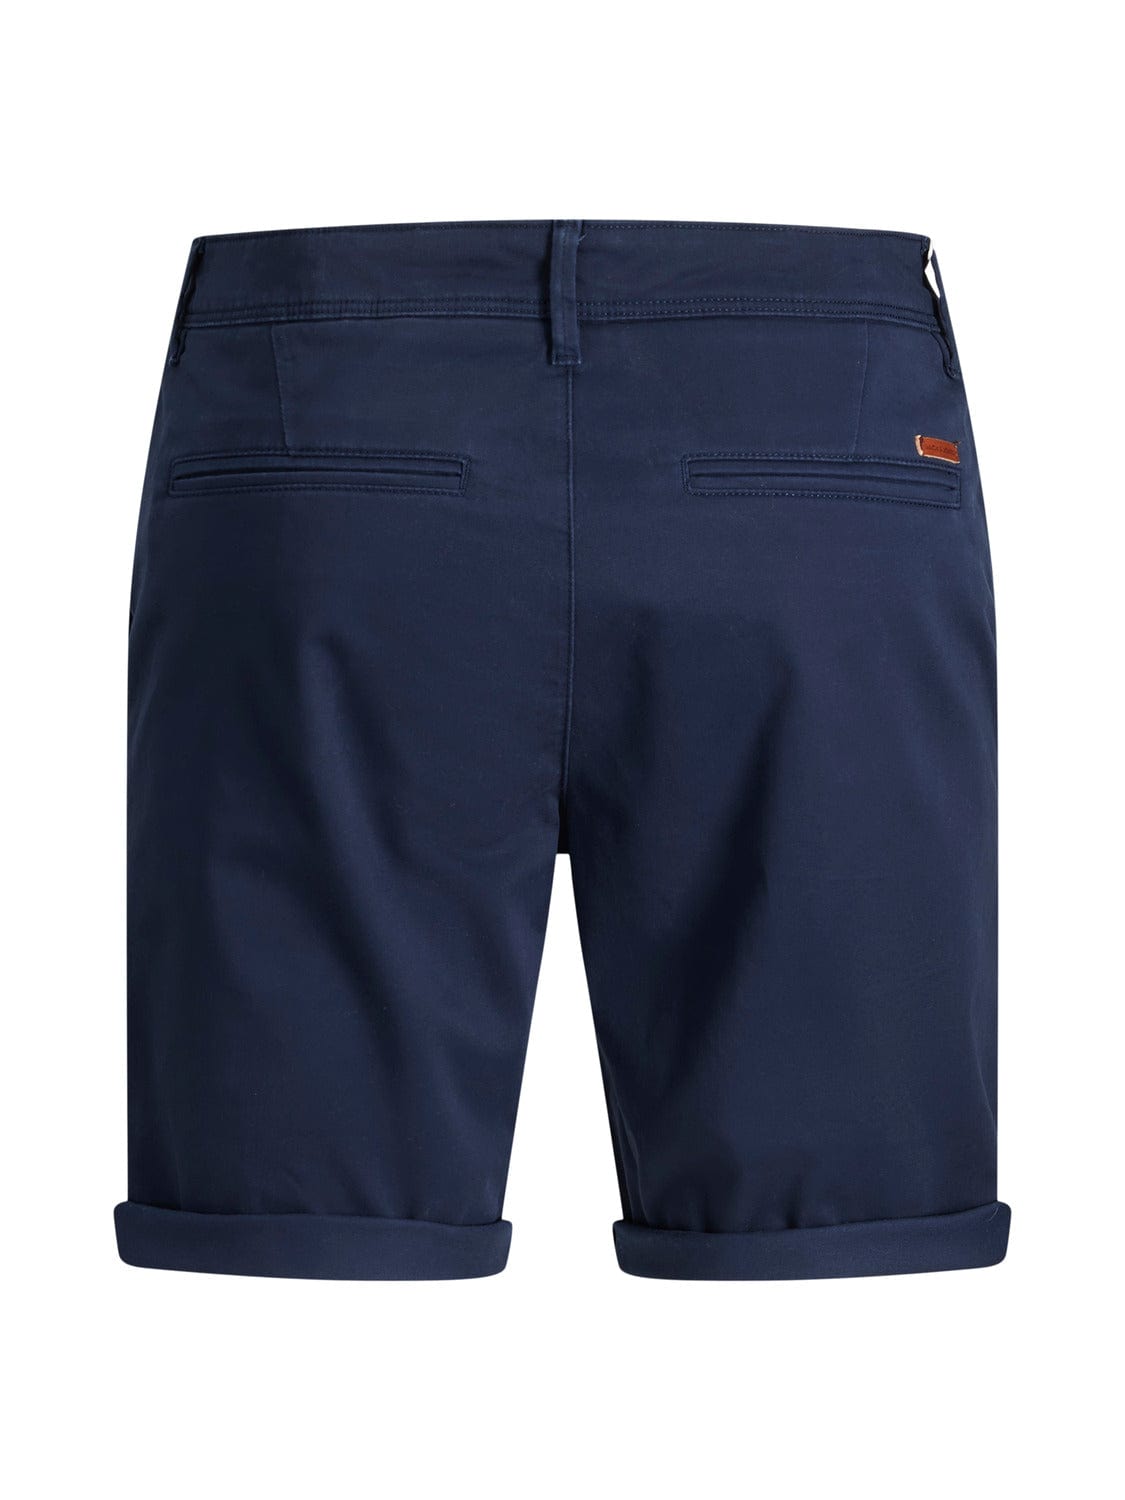 Pantalones cortos- JJIBOWIE Azul marino